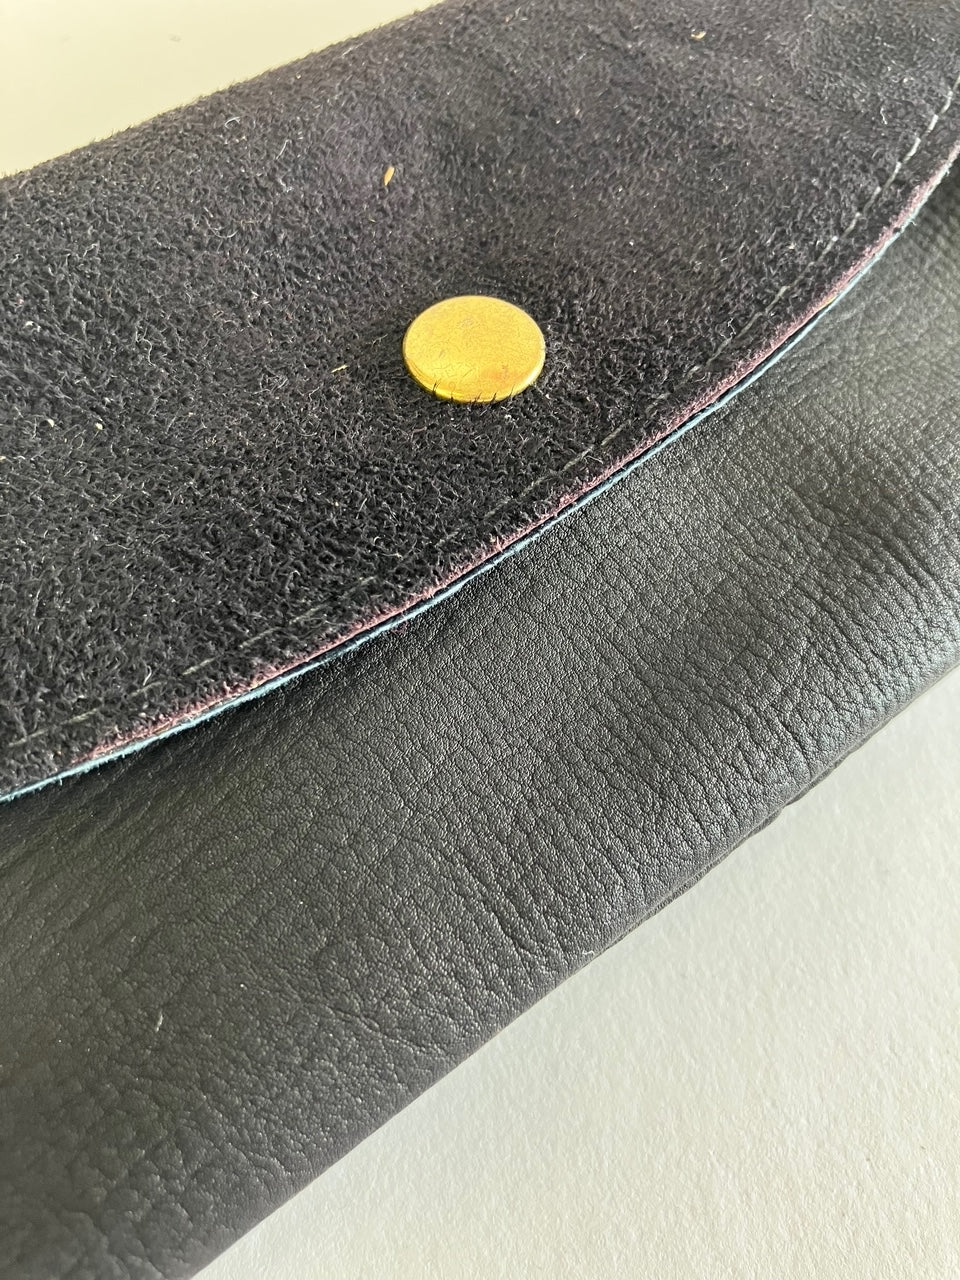 SAMPLE black nubuck Minimalist leather wallet